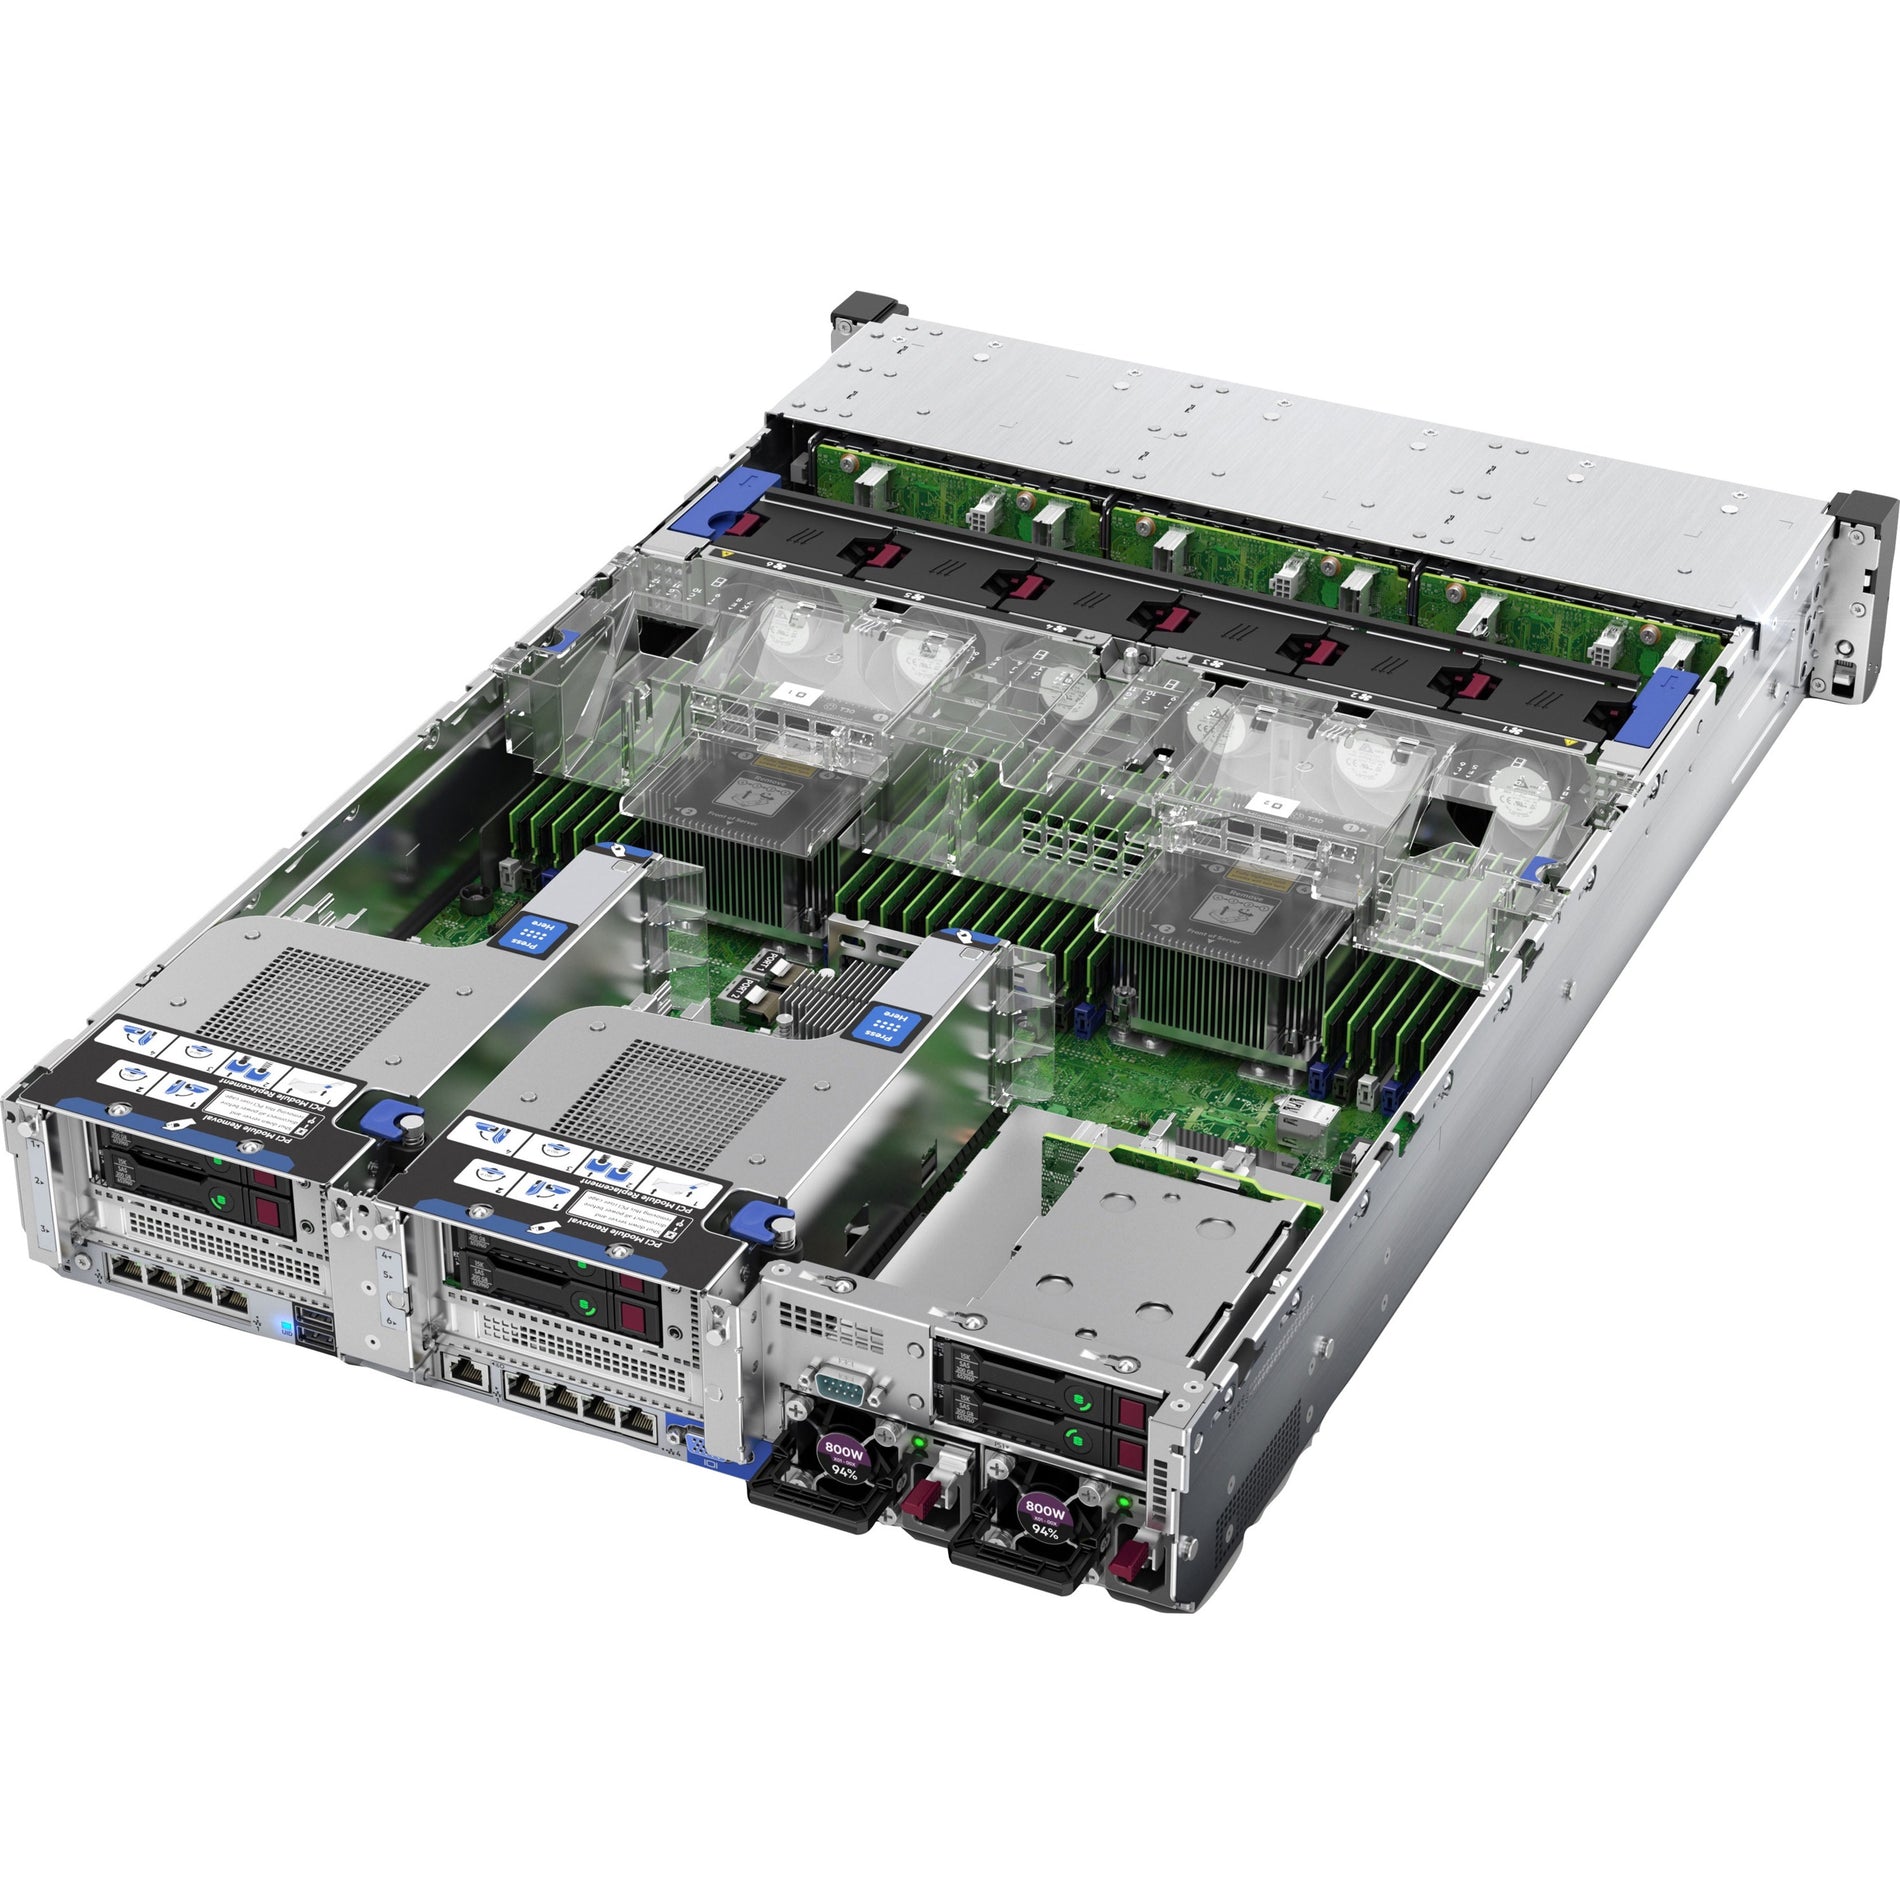 HPE P24846-B21 ProLiant DL380 Gen10 6226R 2.9GHz 16-core 1P 32GB-R S100i NC 8SFF 800W PS Server, 10 Gigabit Ethernet